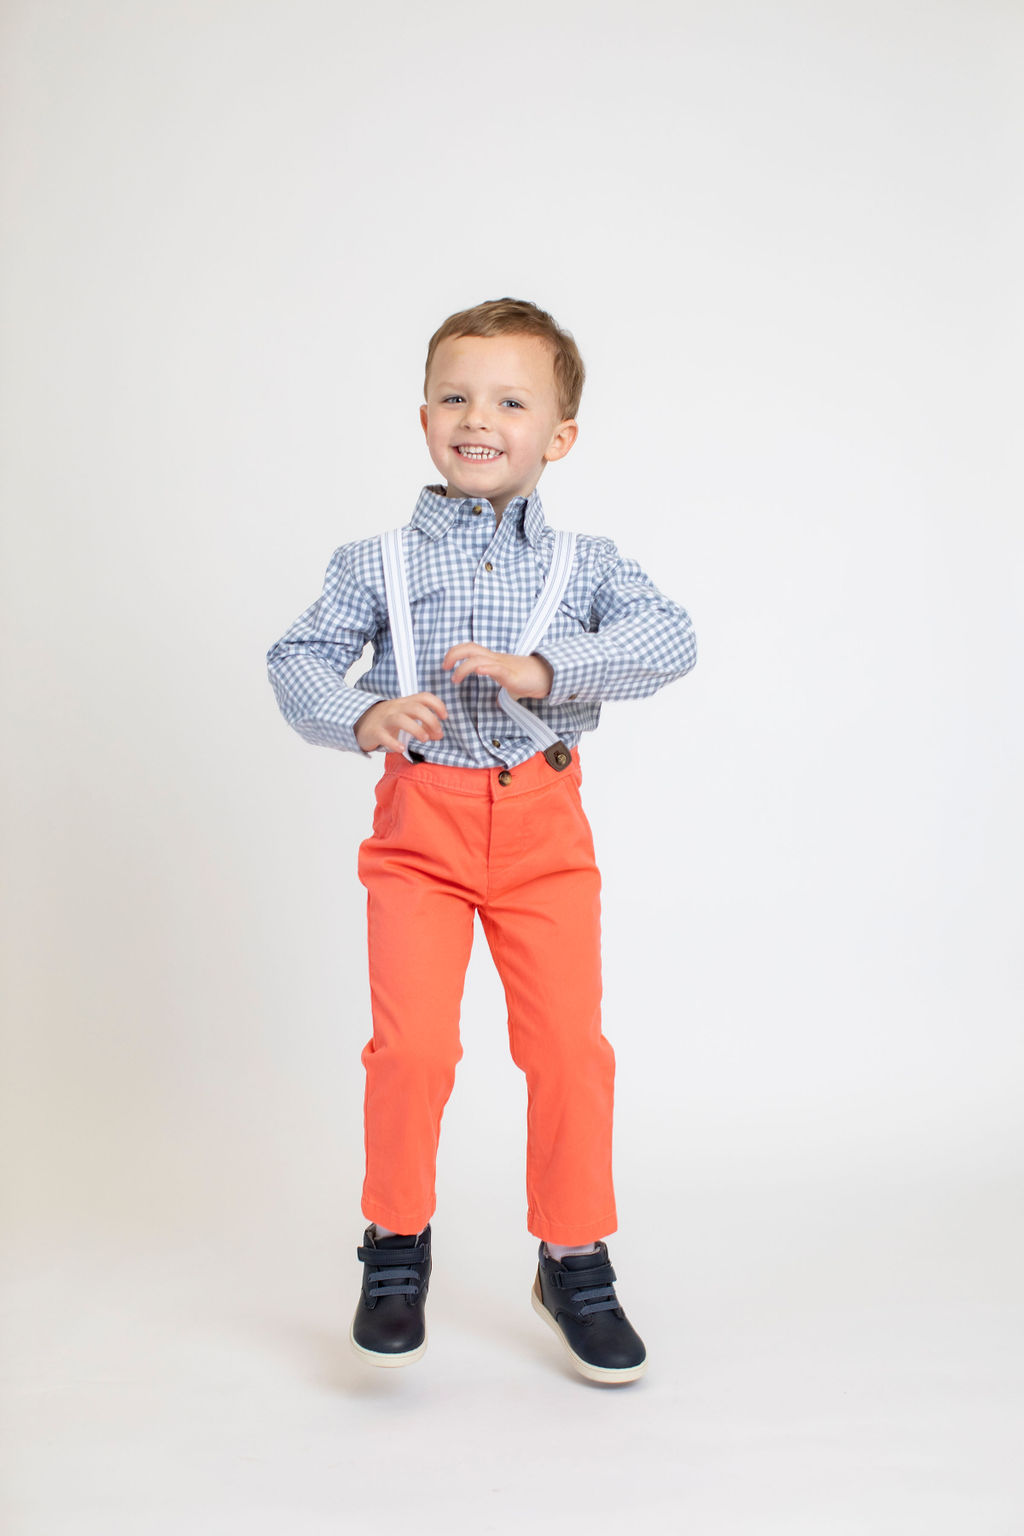 boy in suspenders portrait